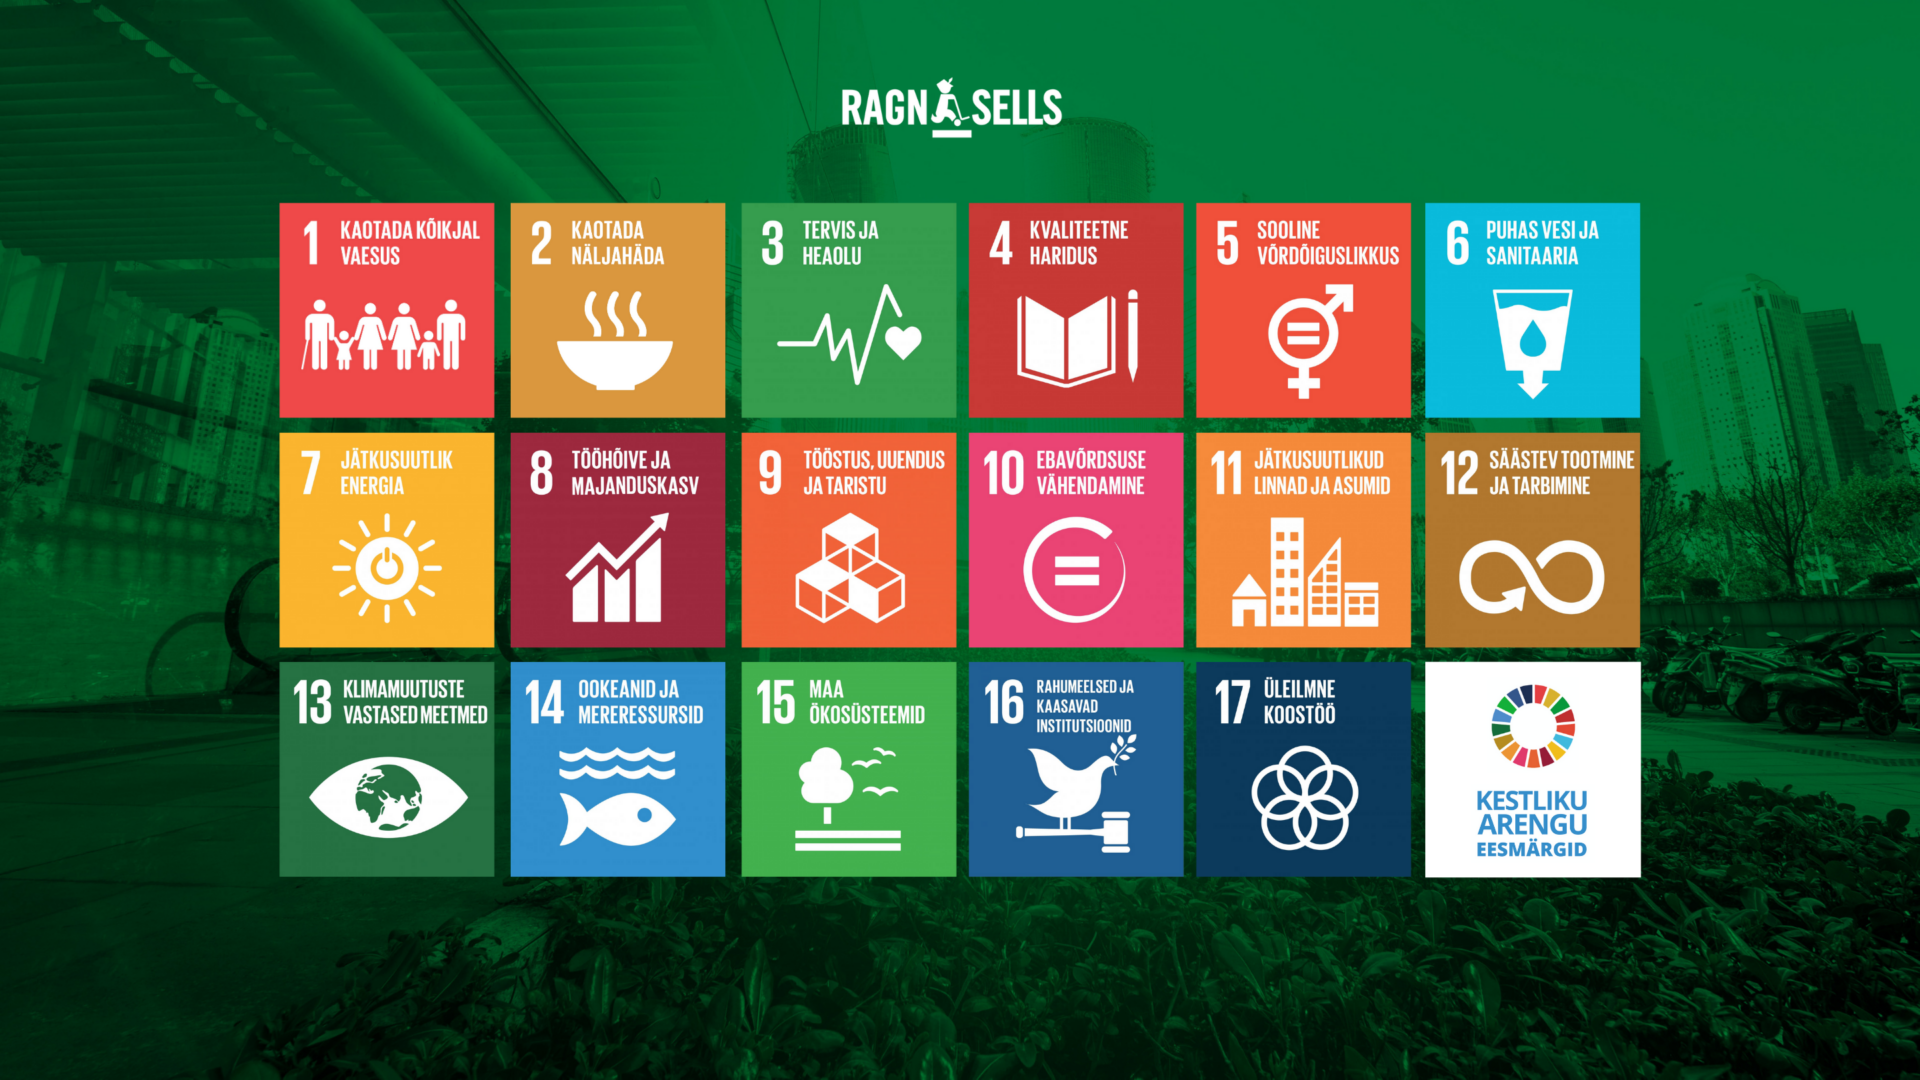 SDG Ragn-Sells